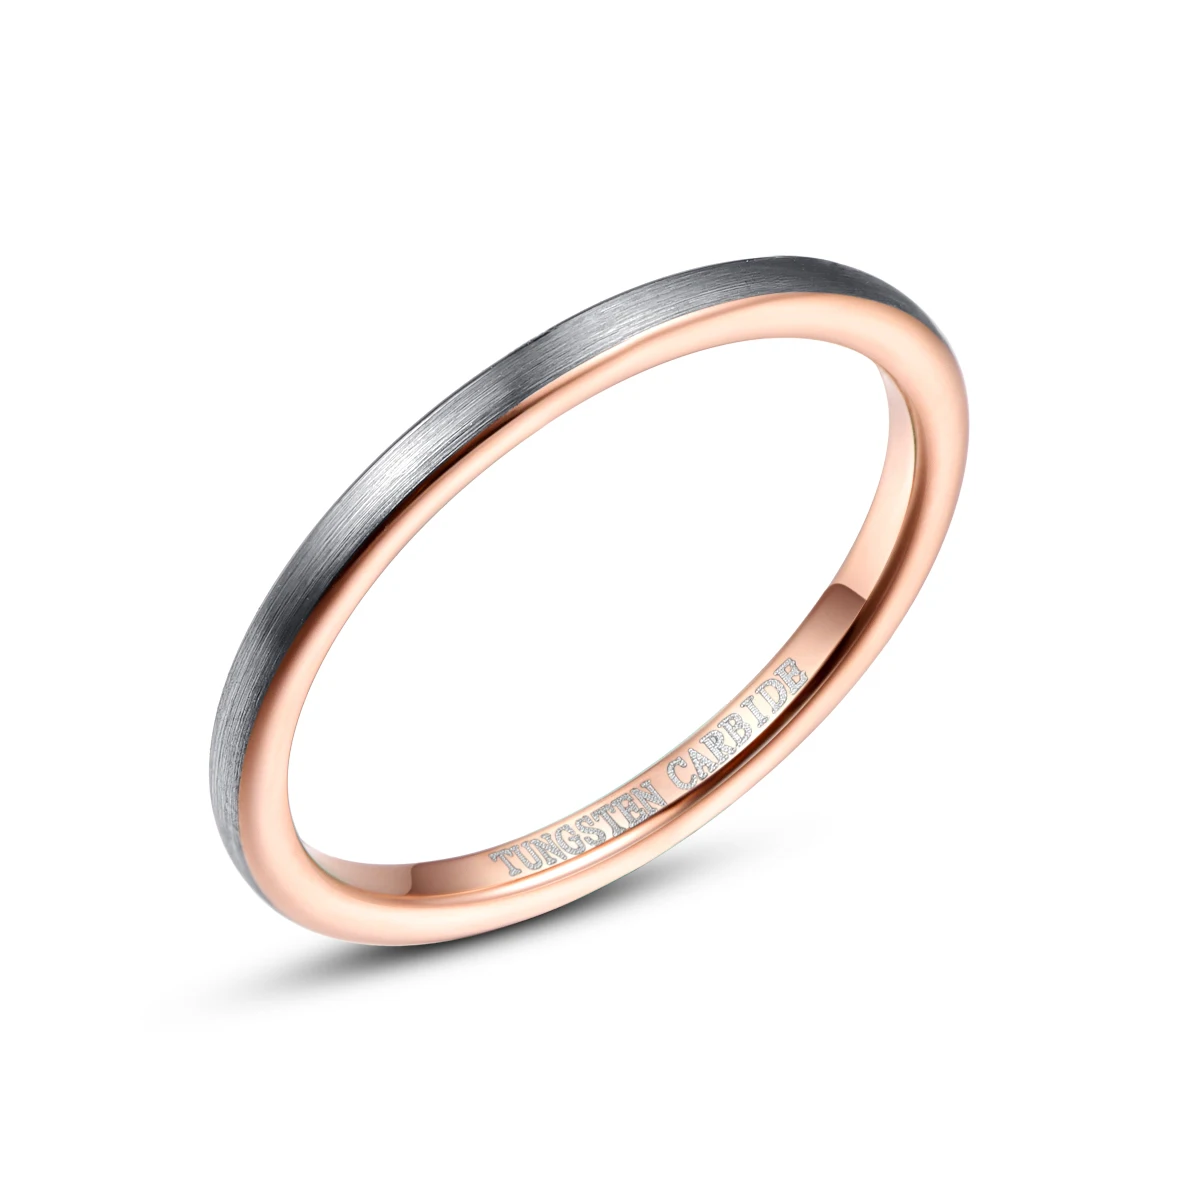 Новое внутреннее кольцо Nuncad шириной 2 мм матовое из розового золота вольфрамовой